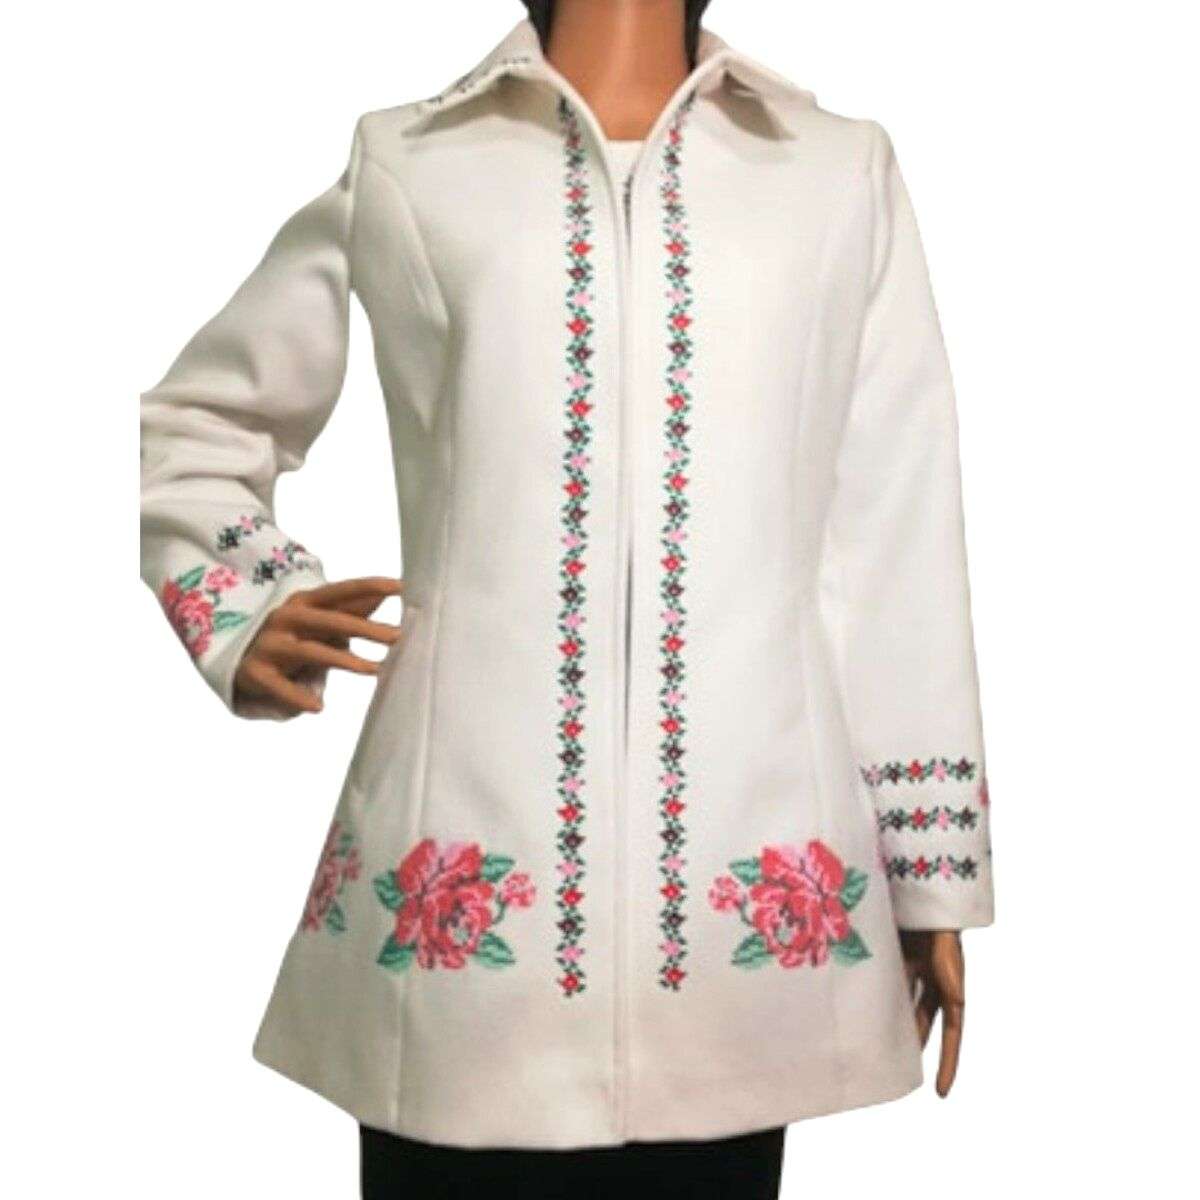 Pardesiu dama din stofa, scurt, croit in Romania, culoare alb cu flori brodate LLDJ403009 (2)